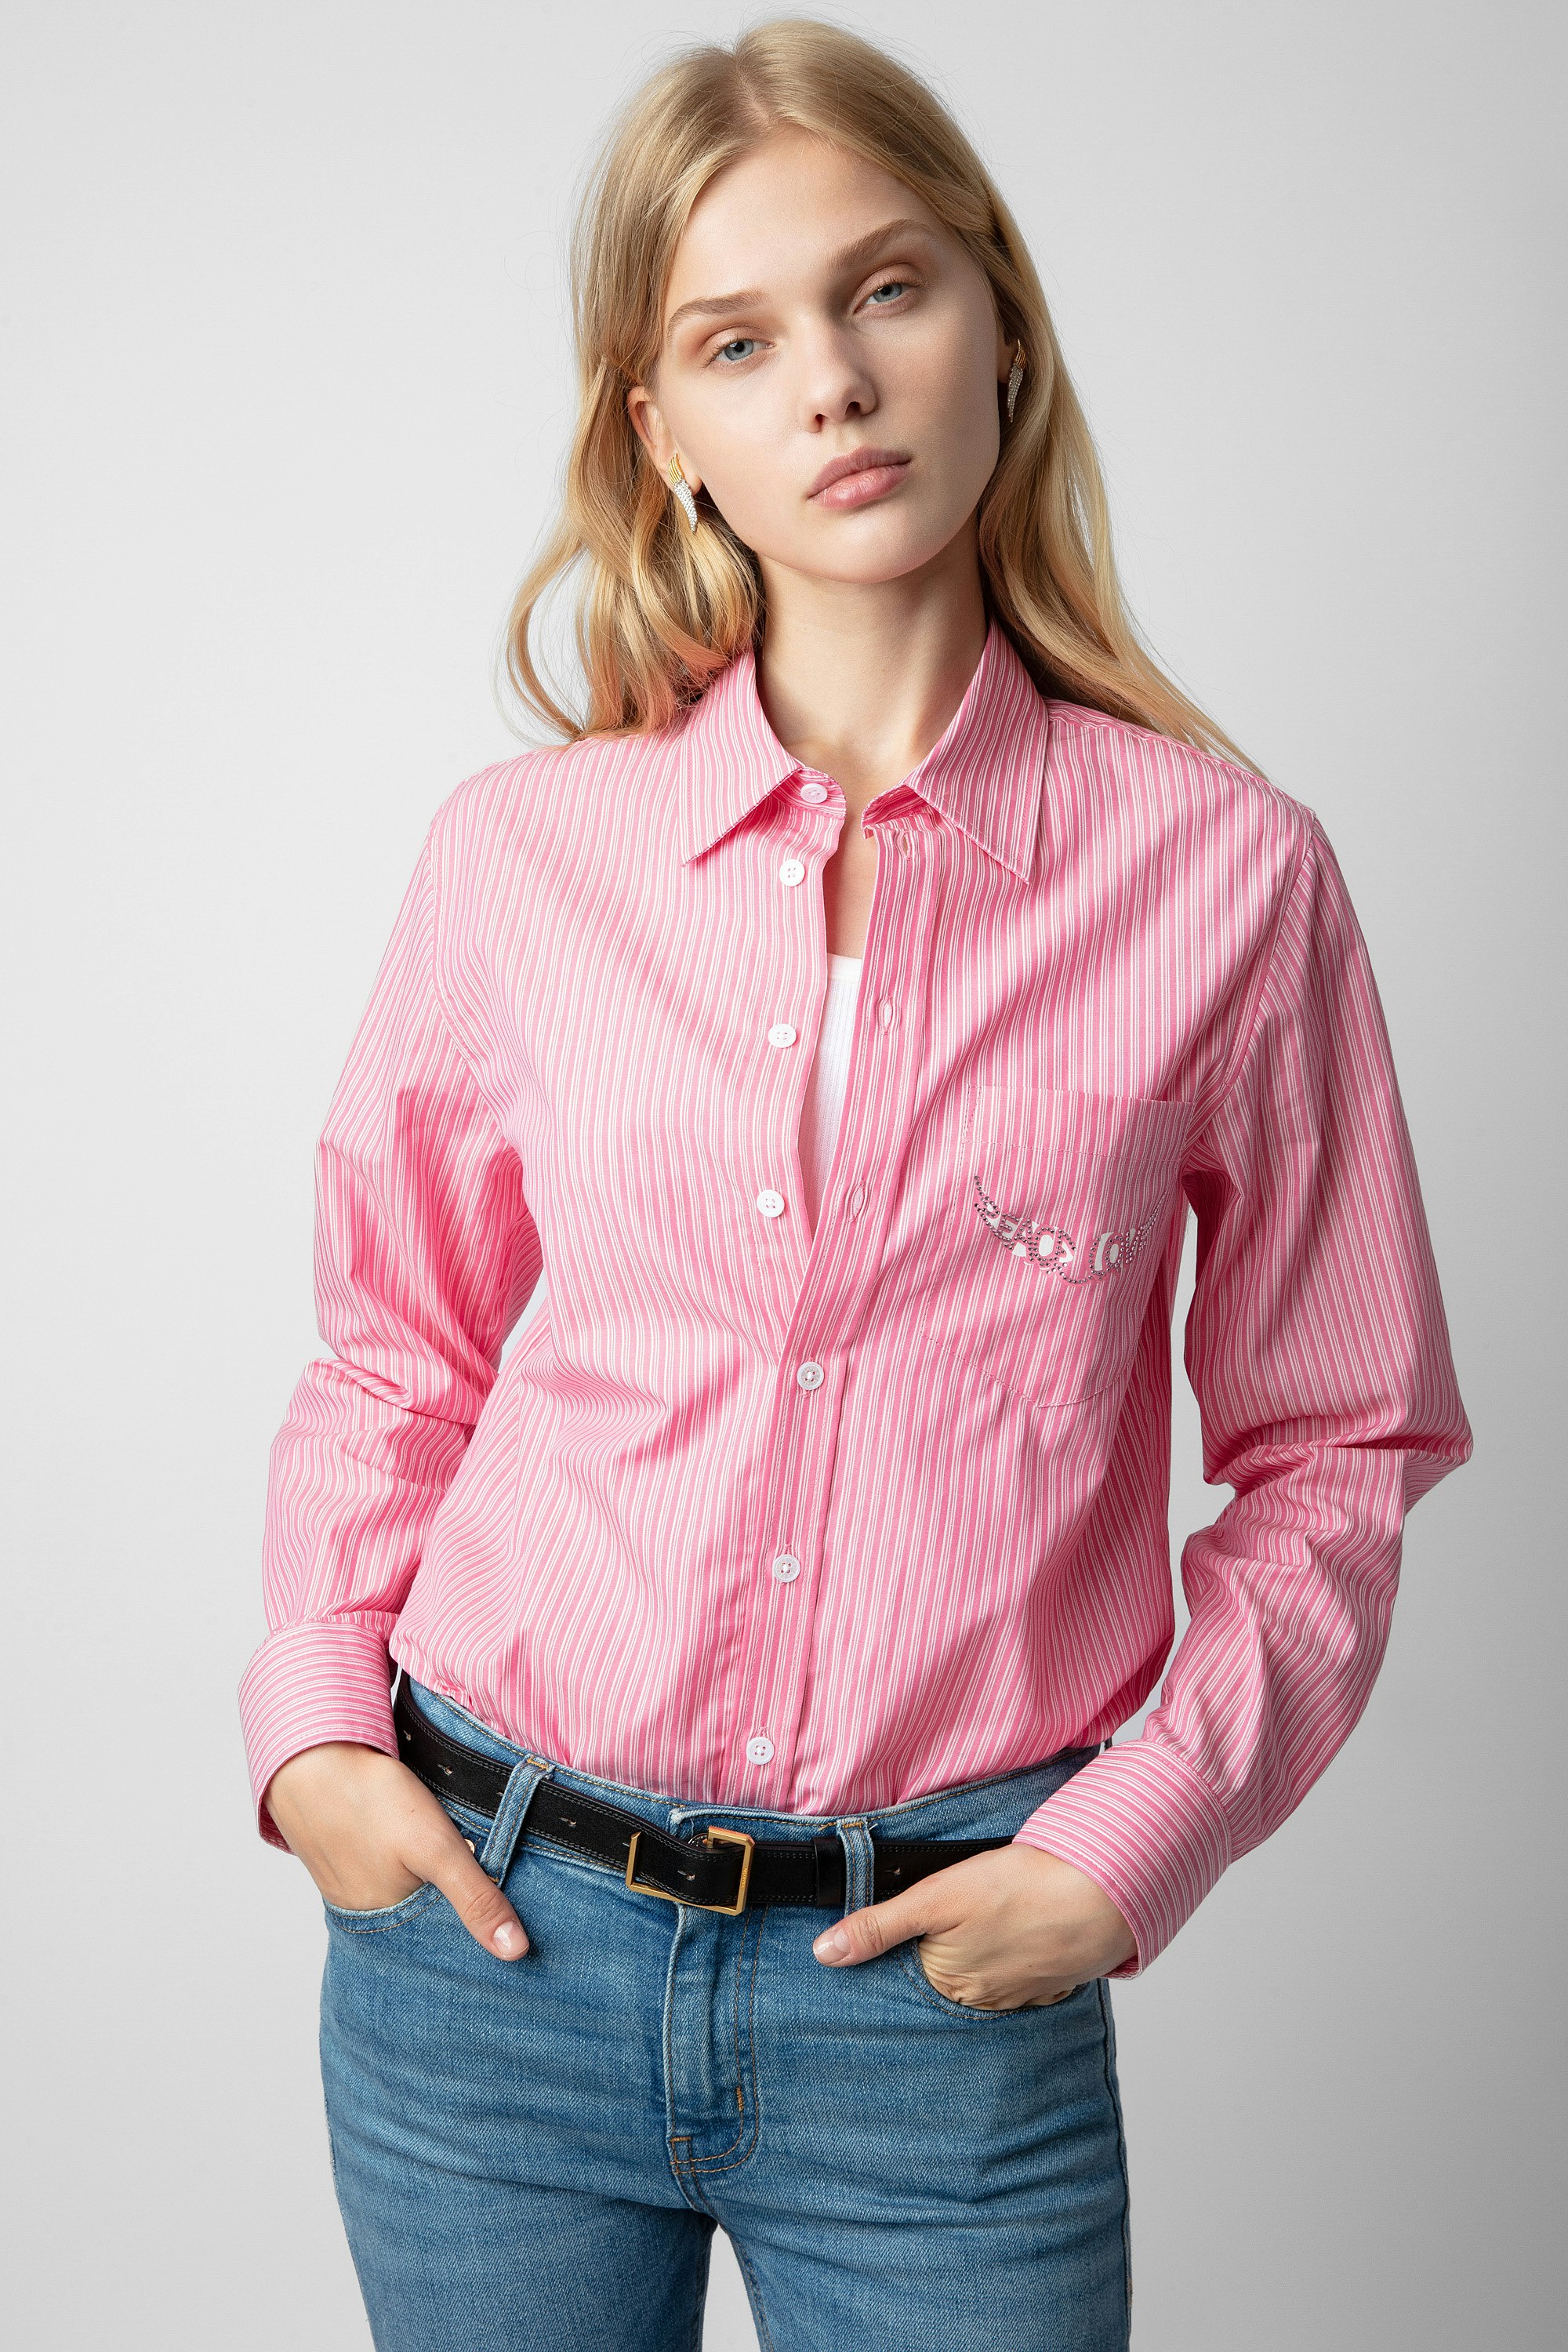 Camisa Taskiz Strass - Camisa rosa de algodón con rayas para mujer con inscripción "Peace & Love" de strass en forma de alas.